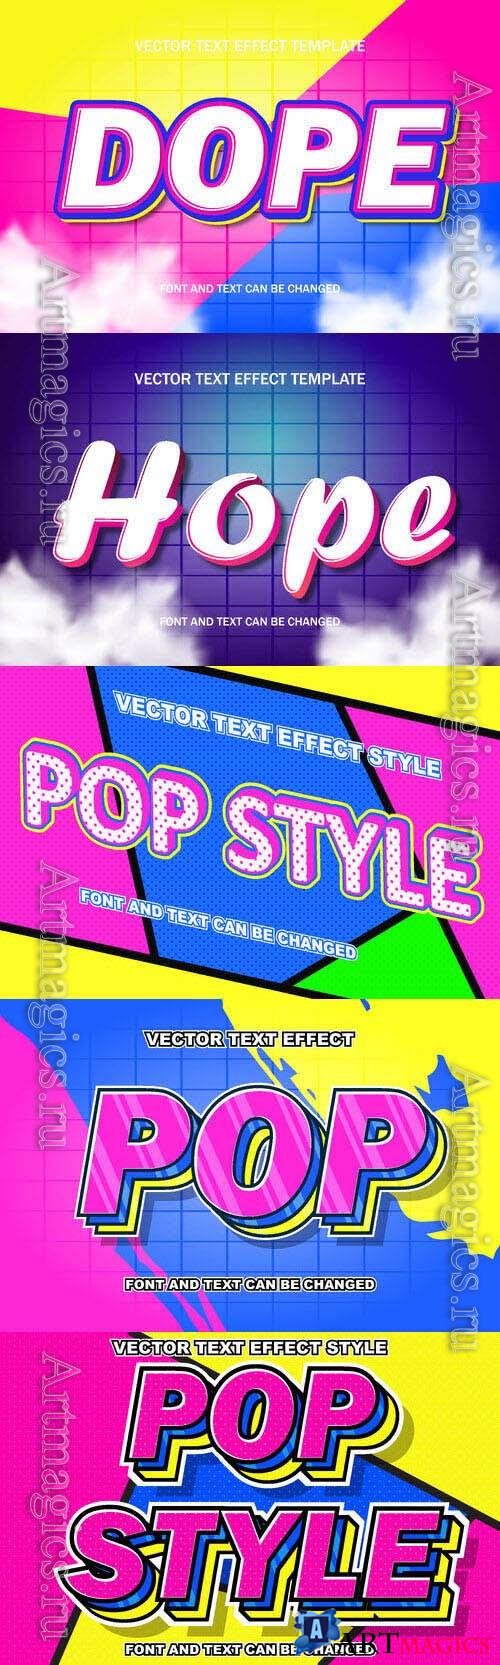 Vector 3d text editable, text effect font design
 set vol 82